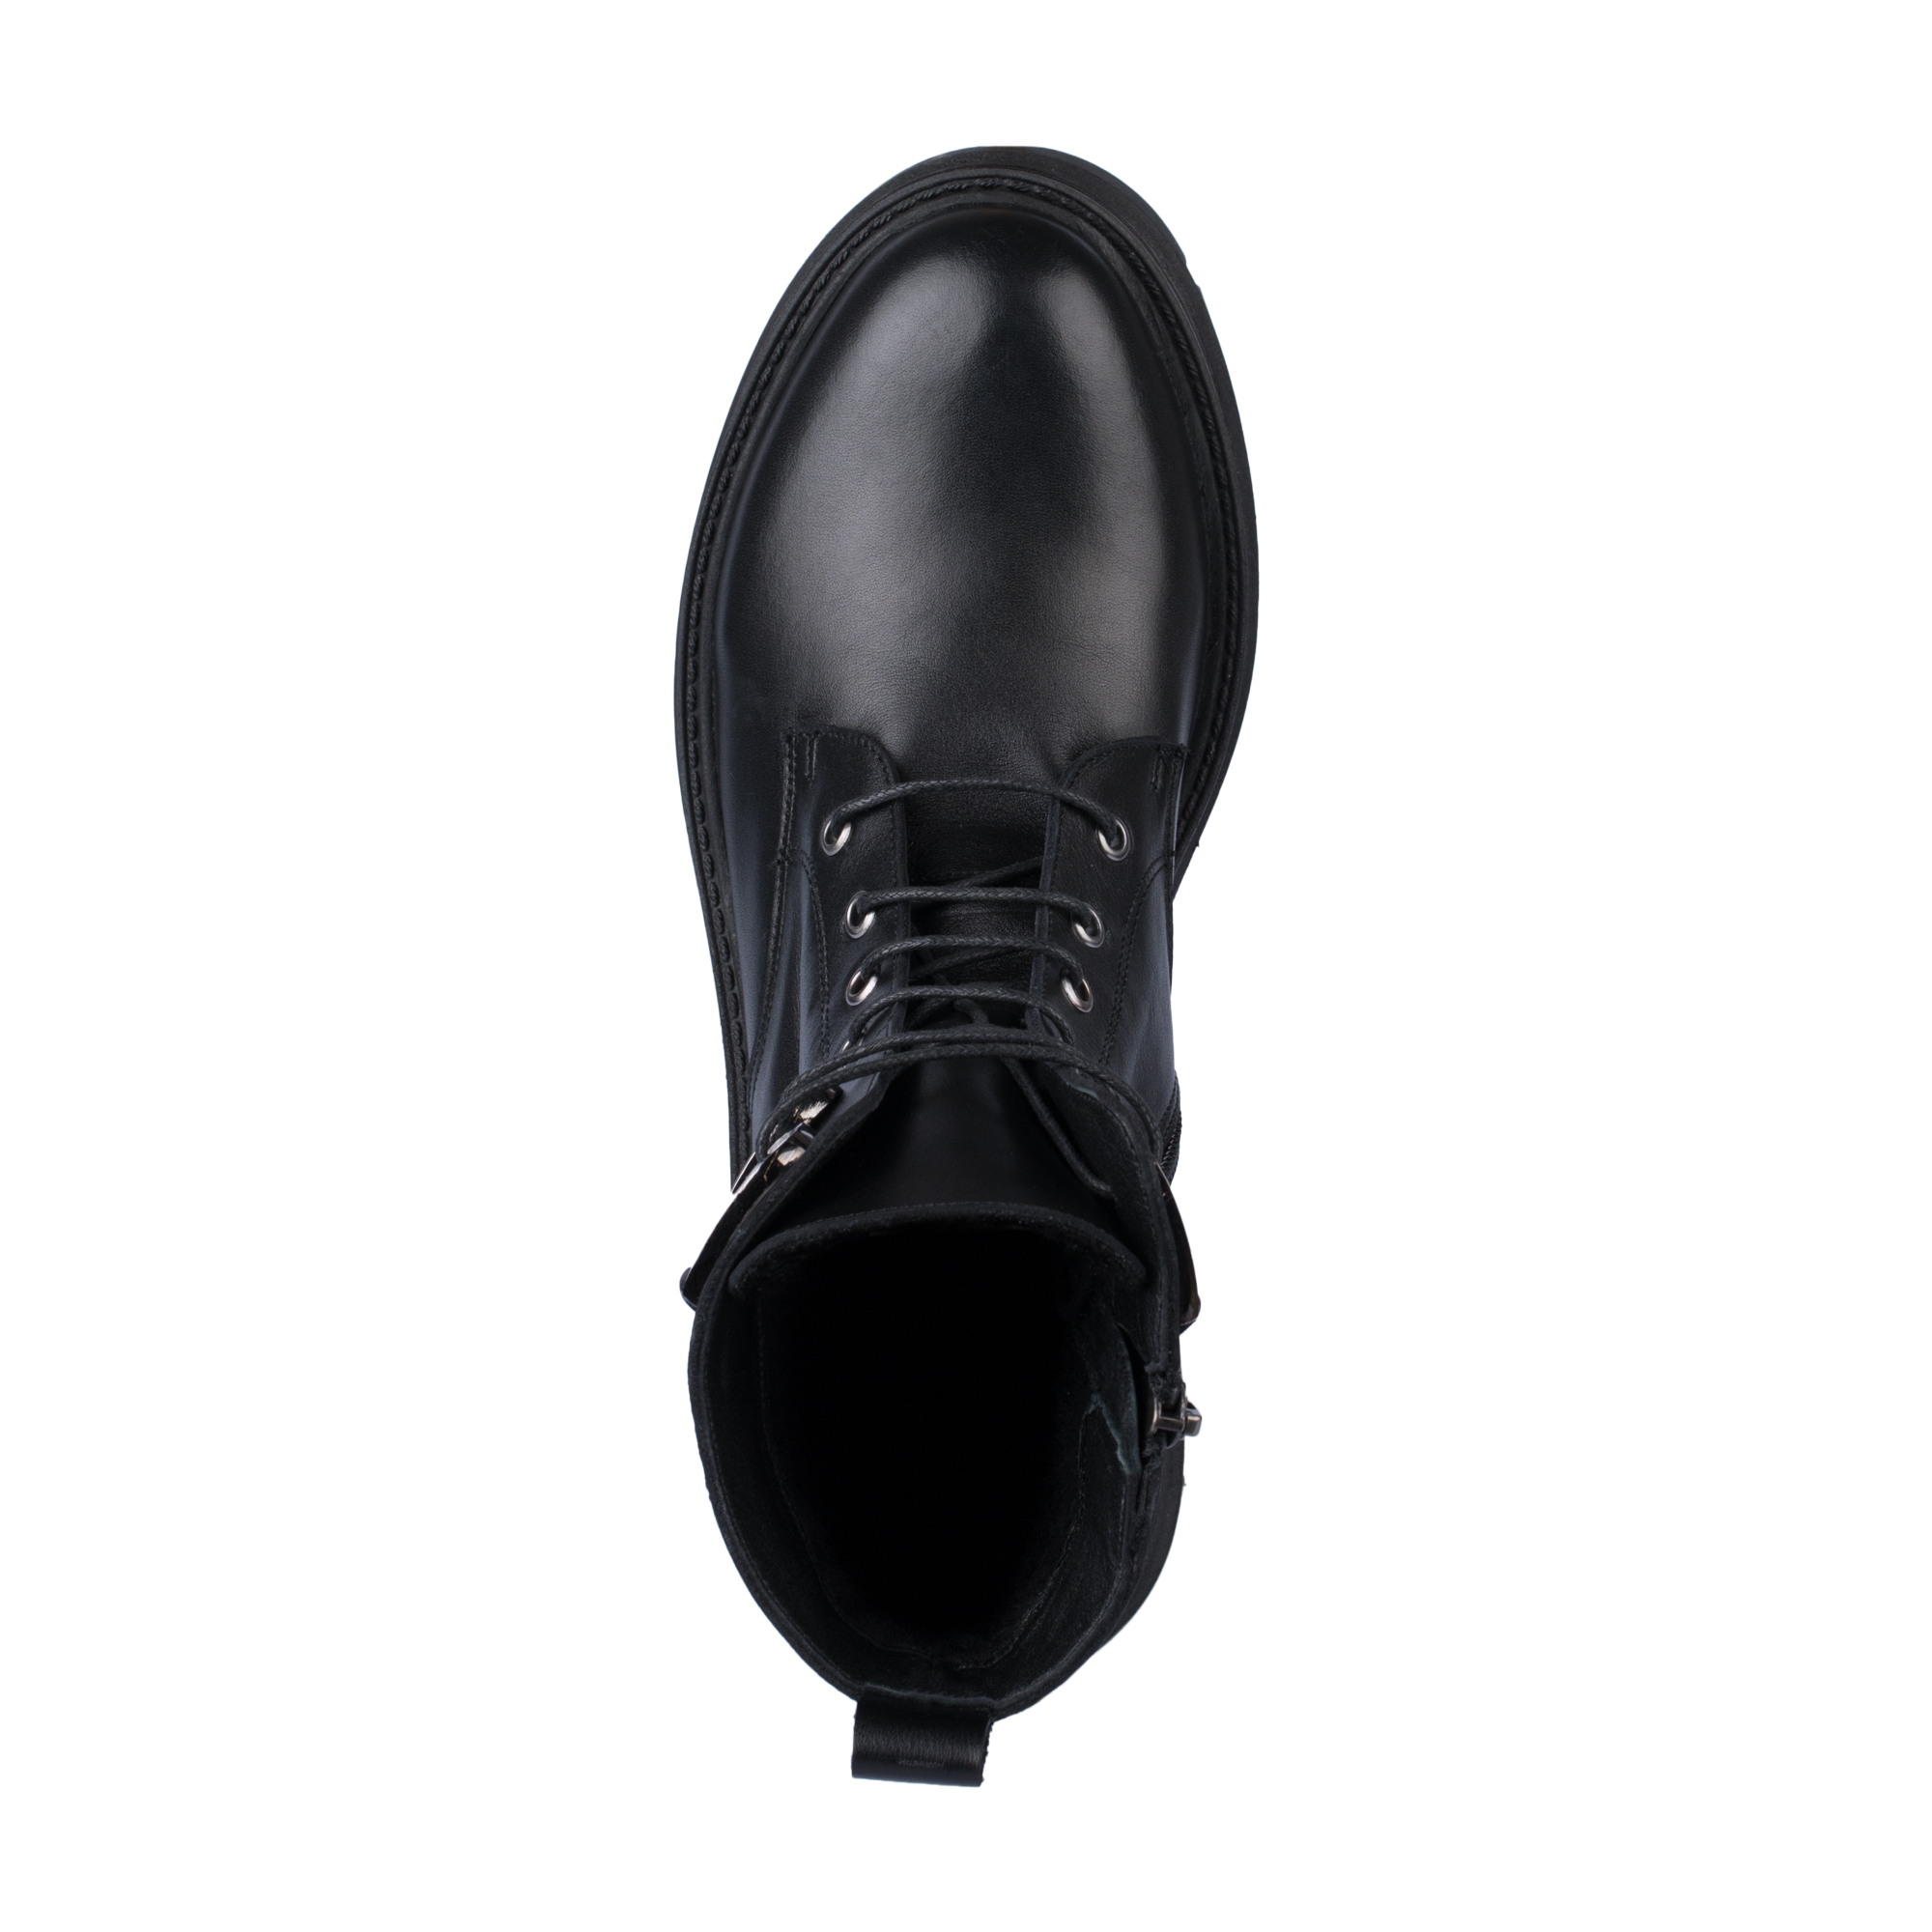 Ботинки Thomas Munz 539-021A-2102, цвет черный, размер 37 - фото 5